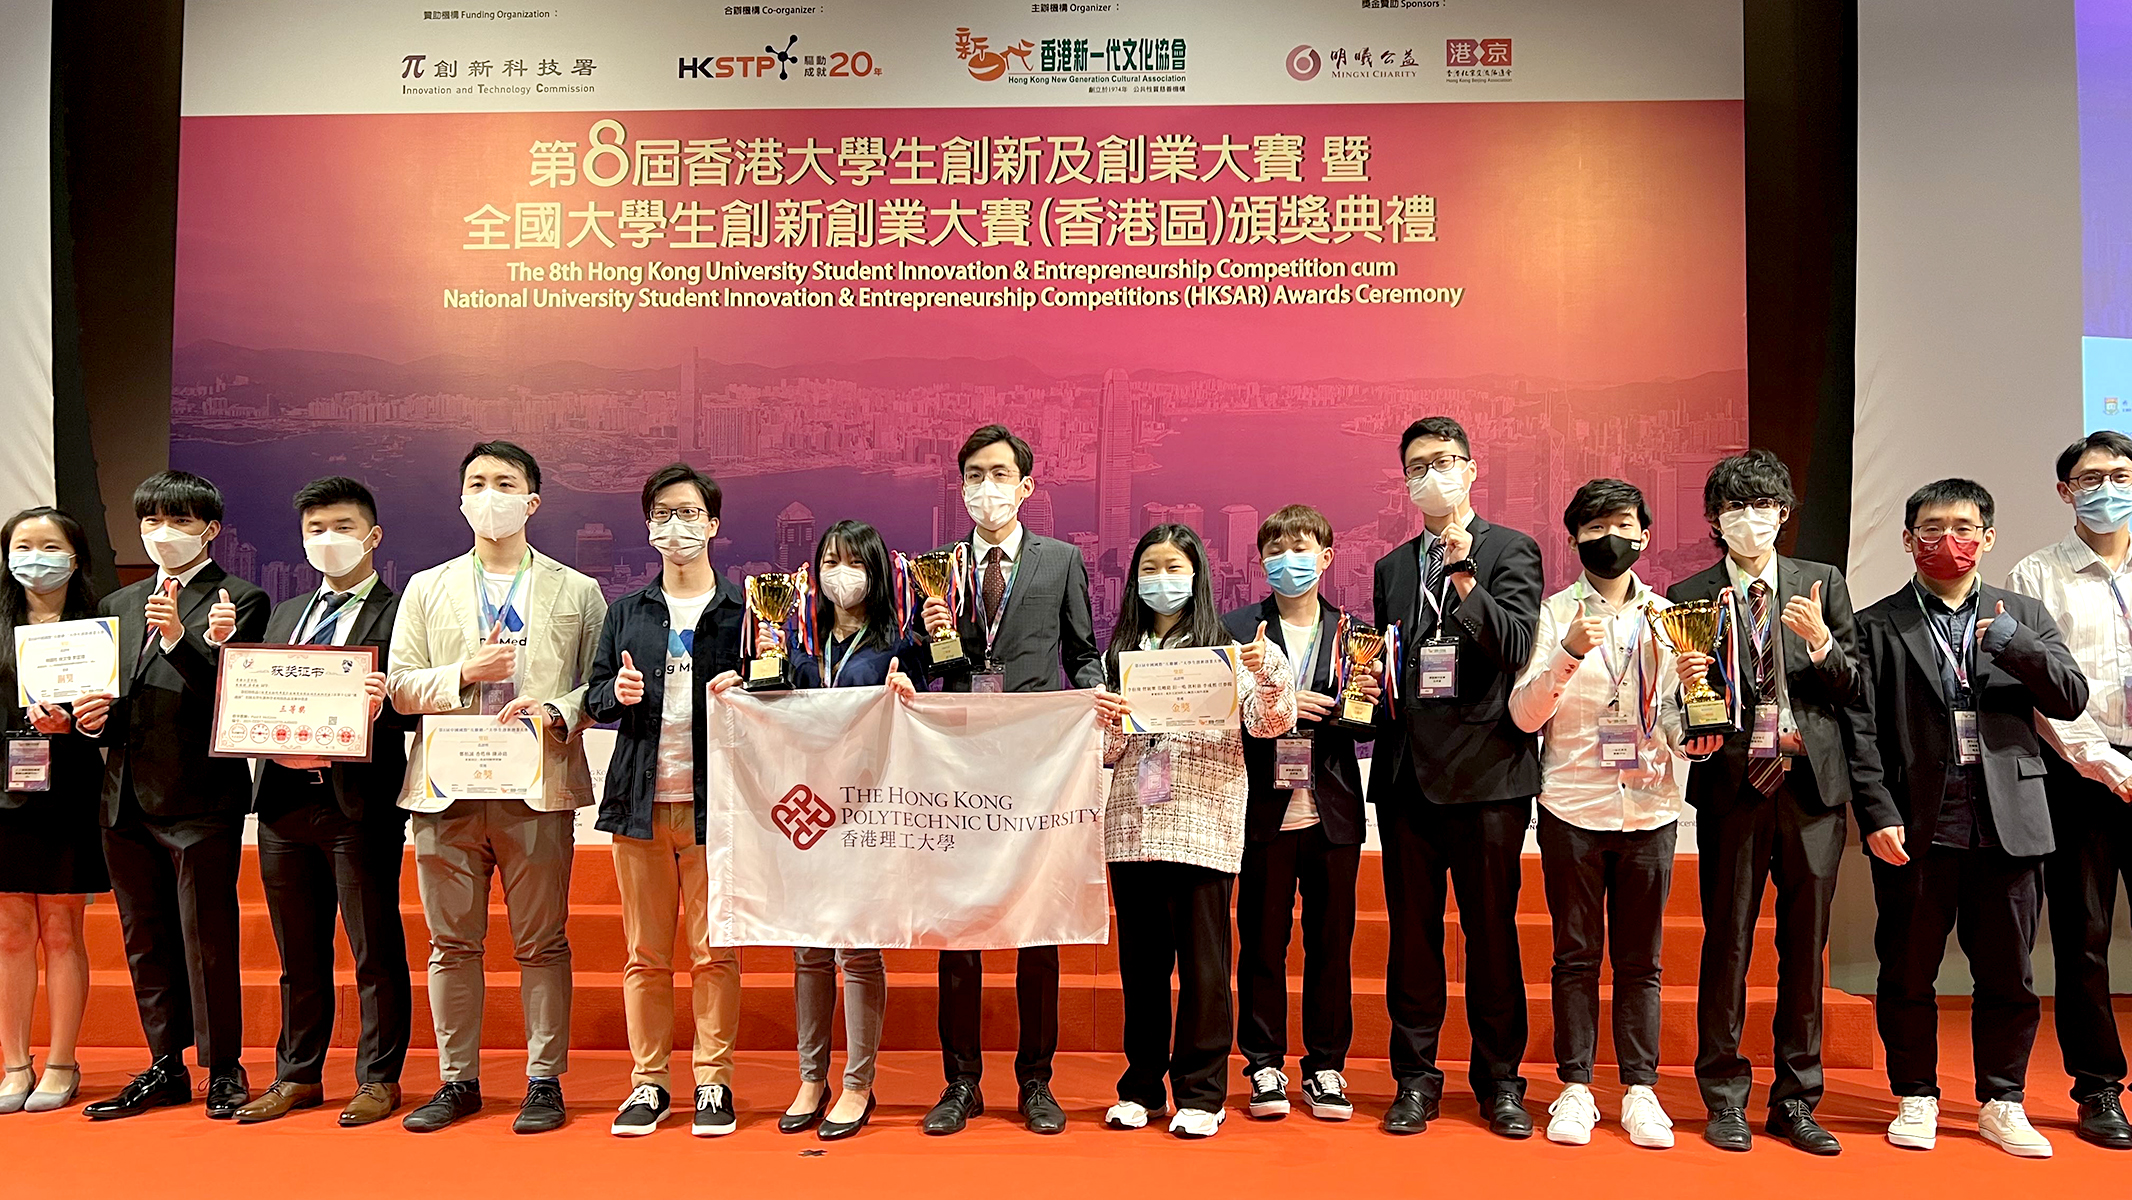 该项目团队亦赢得第八届中国国际大学生 “互联网＋” 创新创业大赛的金奖。